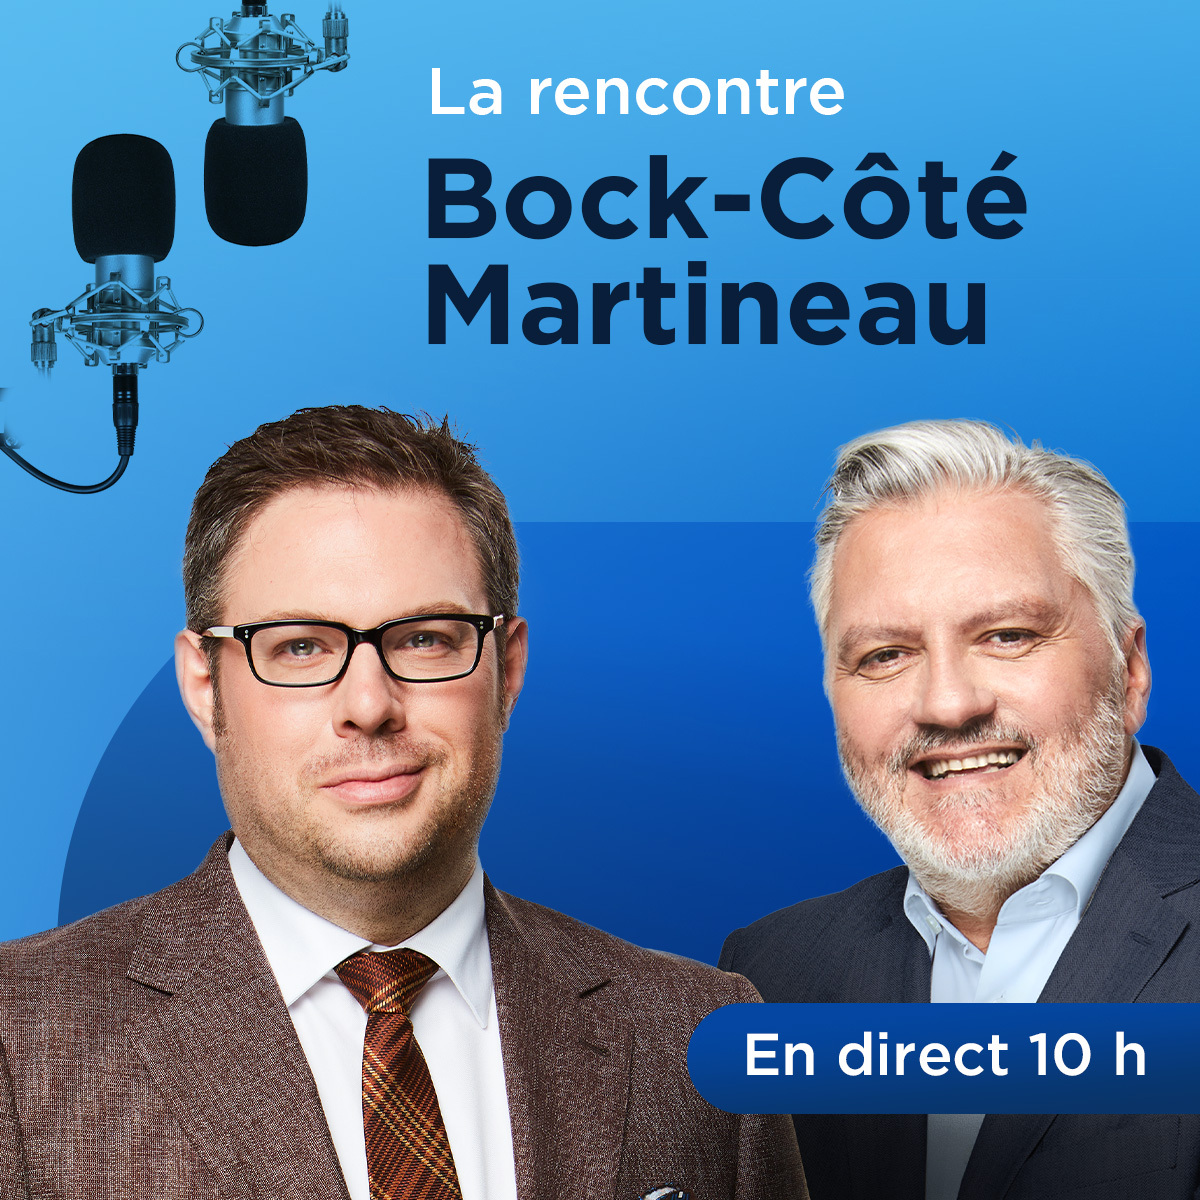 «On a quitté l’époque de la discussion démocratique raisonnable et intelligente», s’inquiète Mathieu Bock-Côté